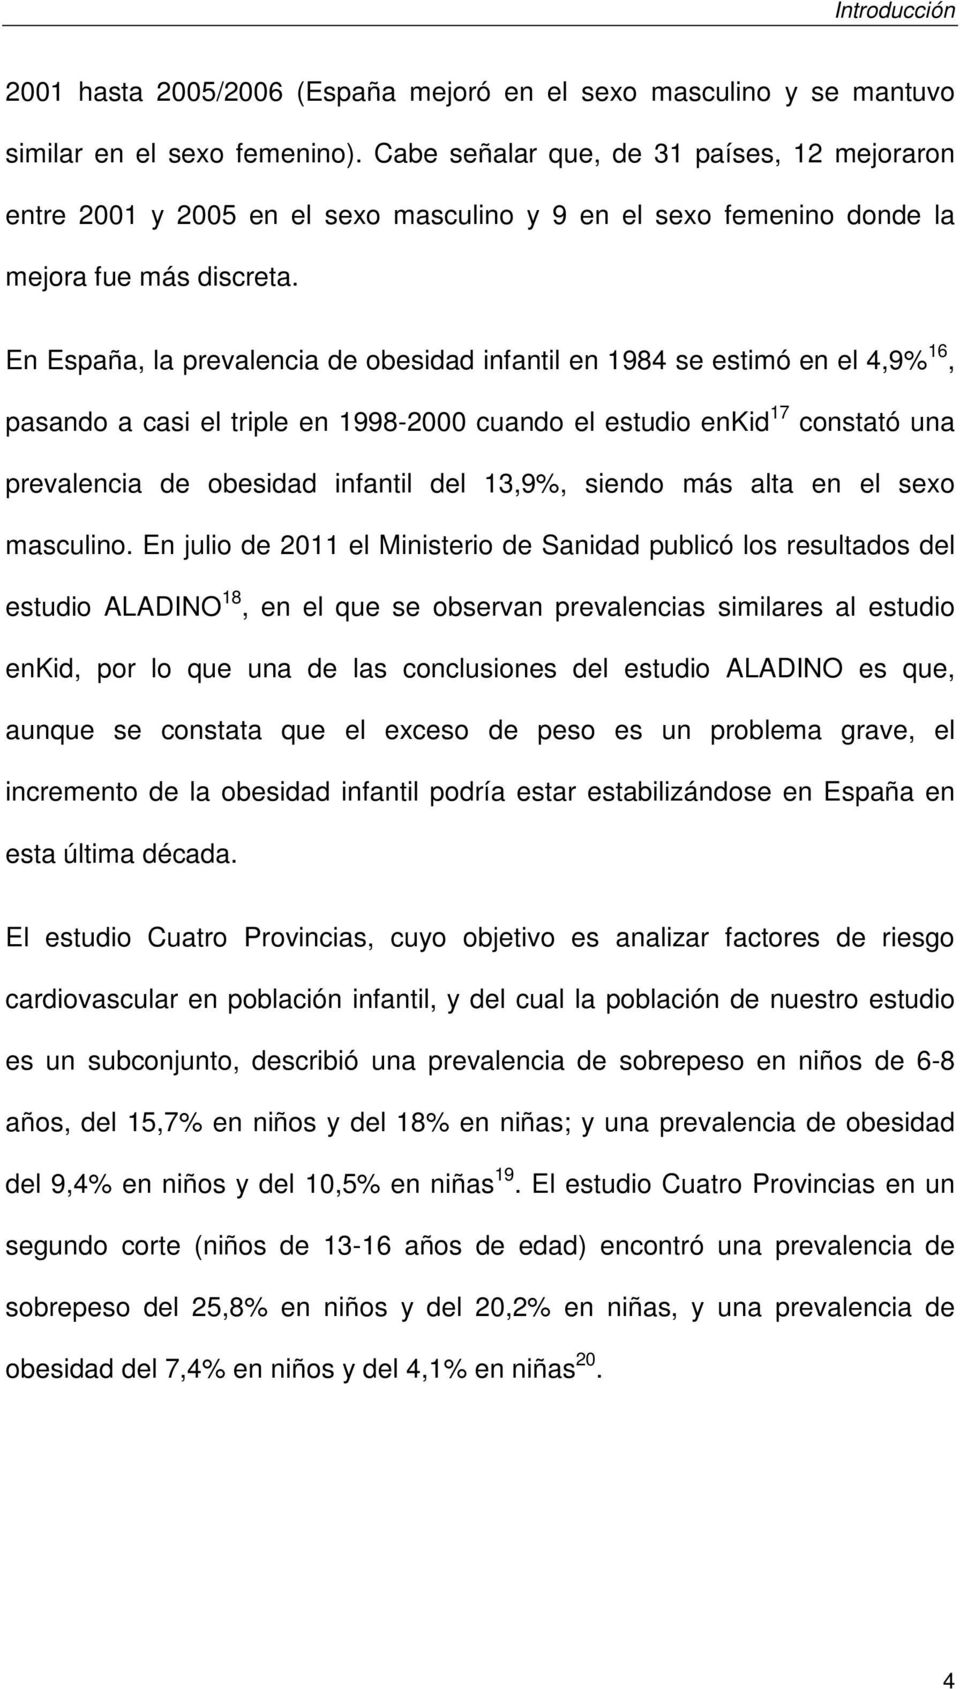 En España, la prevalencia de obesidad infantil en 1984 se estimó en el 4,9% 16, pasando a casi el triple en 1998-2000 cuando el estudio enkid 17 constató una prevalencia de obesidad infantil del